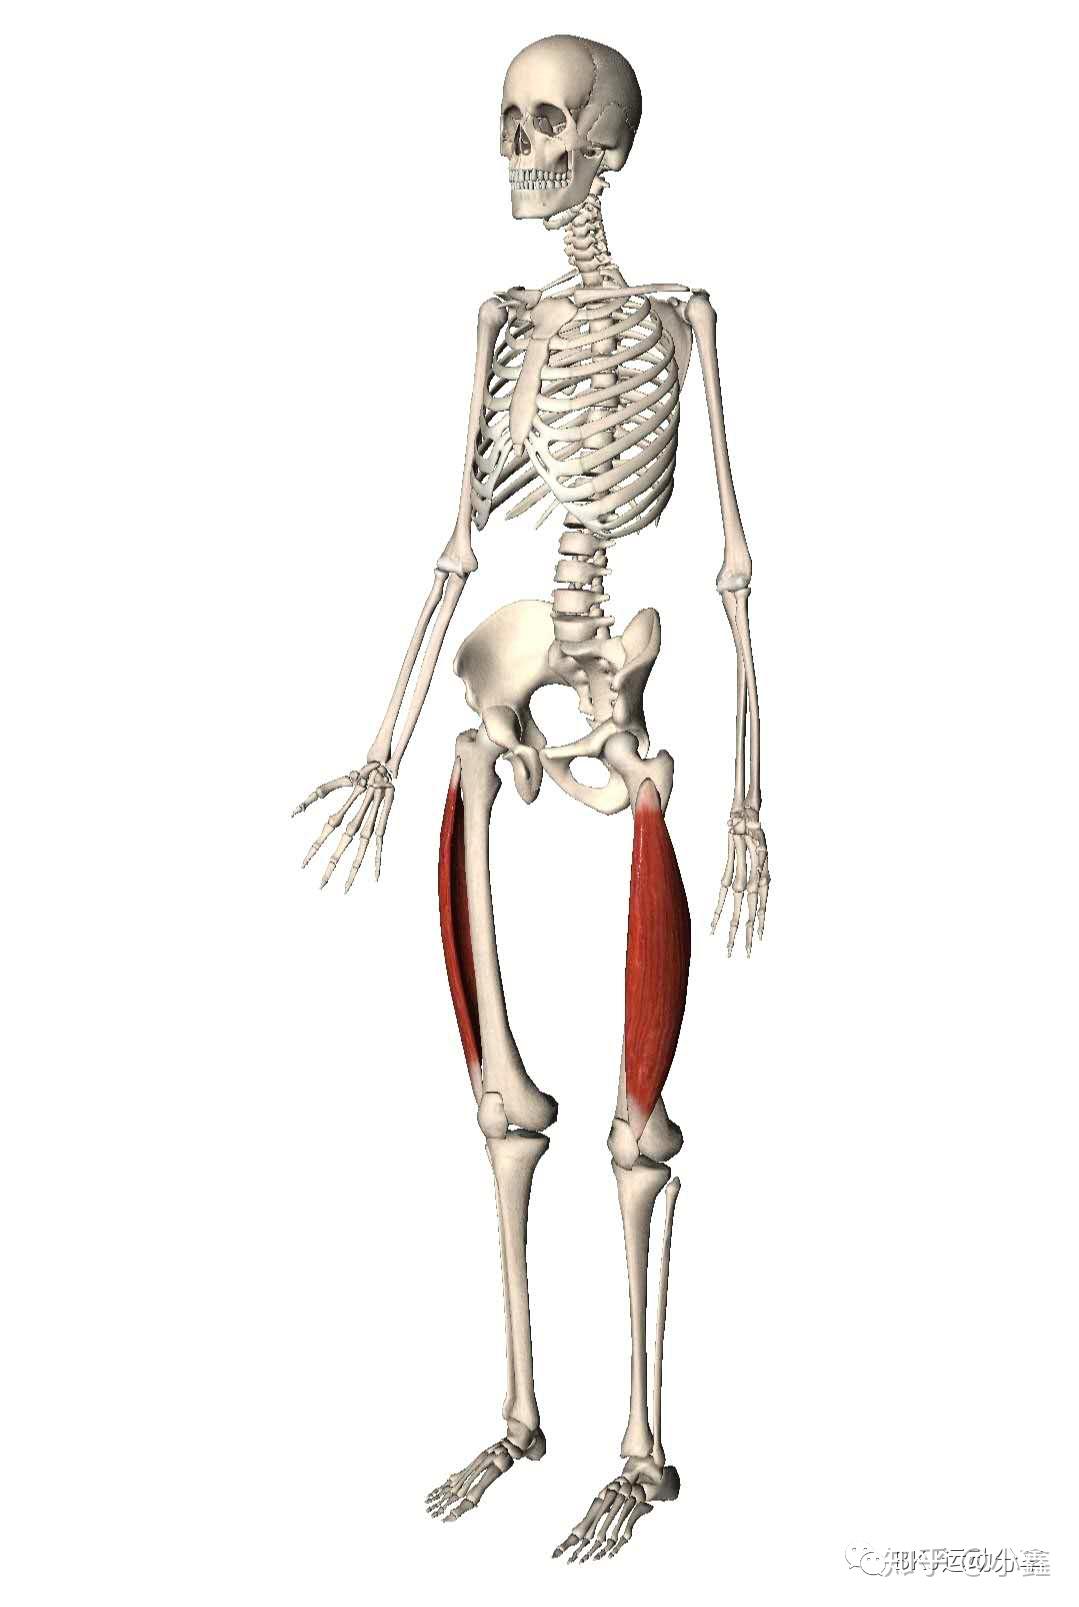 股外侧肌覆盖着整个大腿外侧(从髋部的股骨大转子到膝部),其下端通过